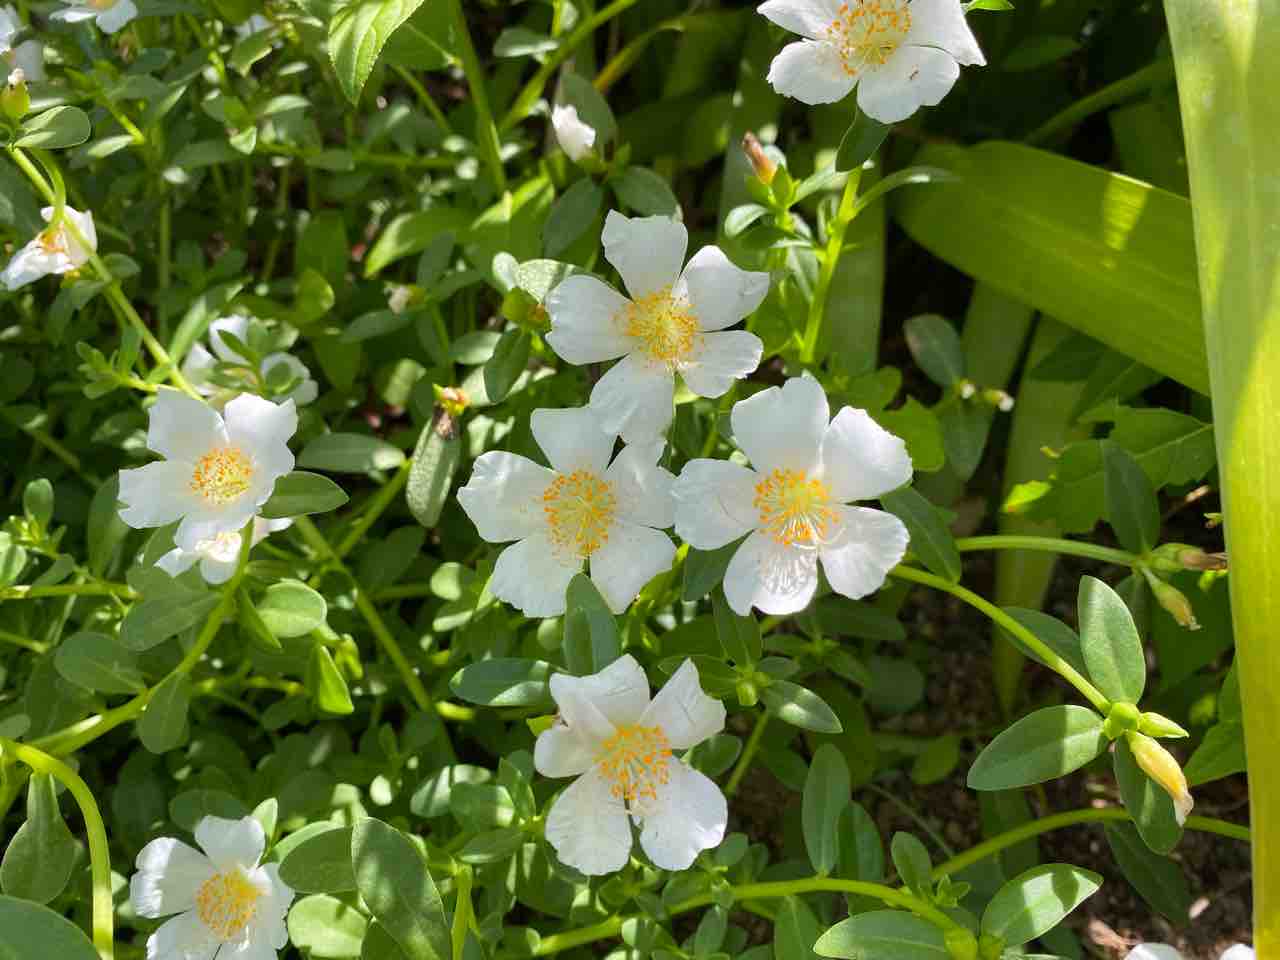 白い可愛い花 名前はわかりませんが素敵です おはようございます 8月12日 写真 花 Rose悠雅